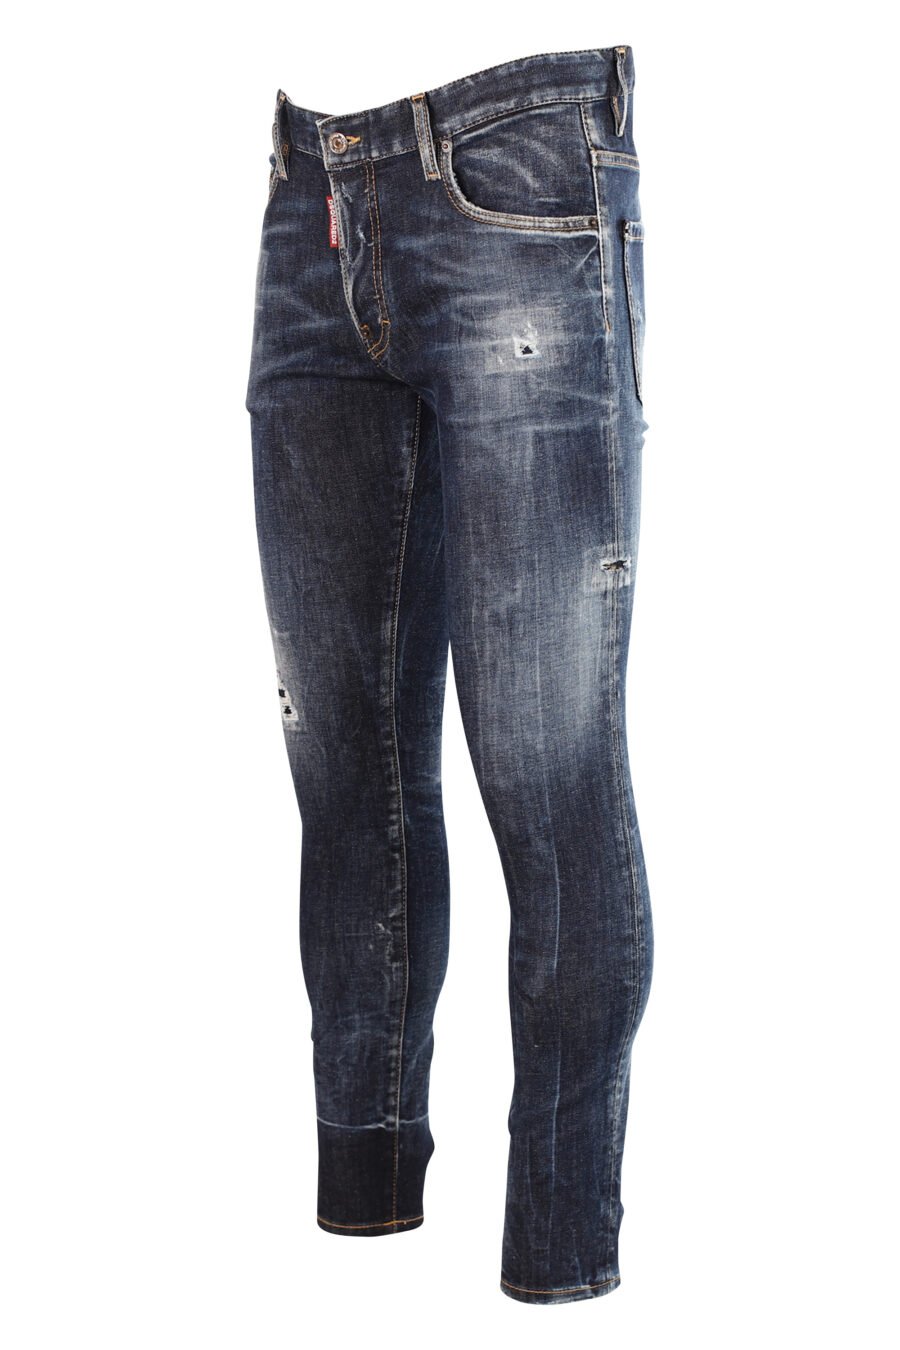 Jeans "super twinkey jean" blue with rips - 8052134966914 2